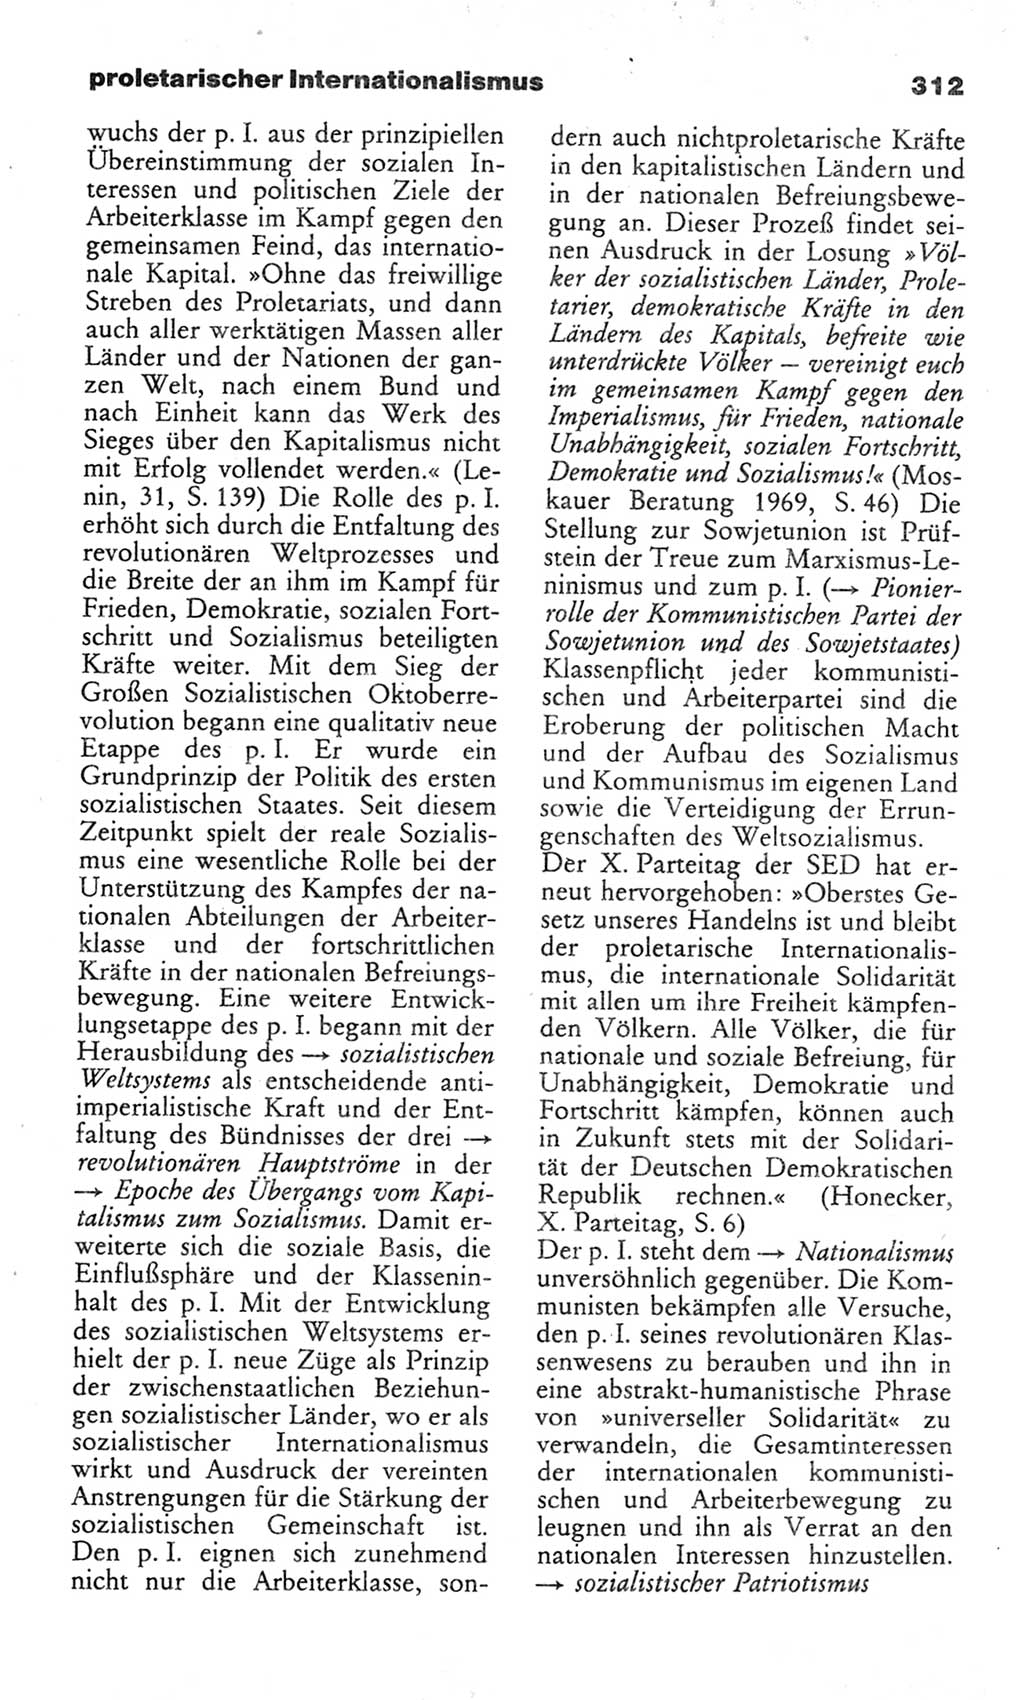 Wörterbuch des wissenschaftlichen Kommunismus [Deutsche Demokratische Republik (DDR)] 1982, Seite 312 (Wb. wiss. Komm. DDR 1982, S. 312)